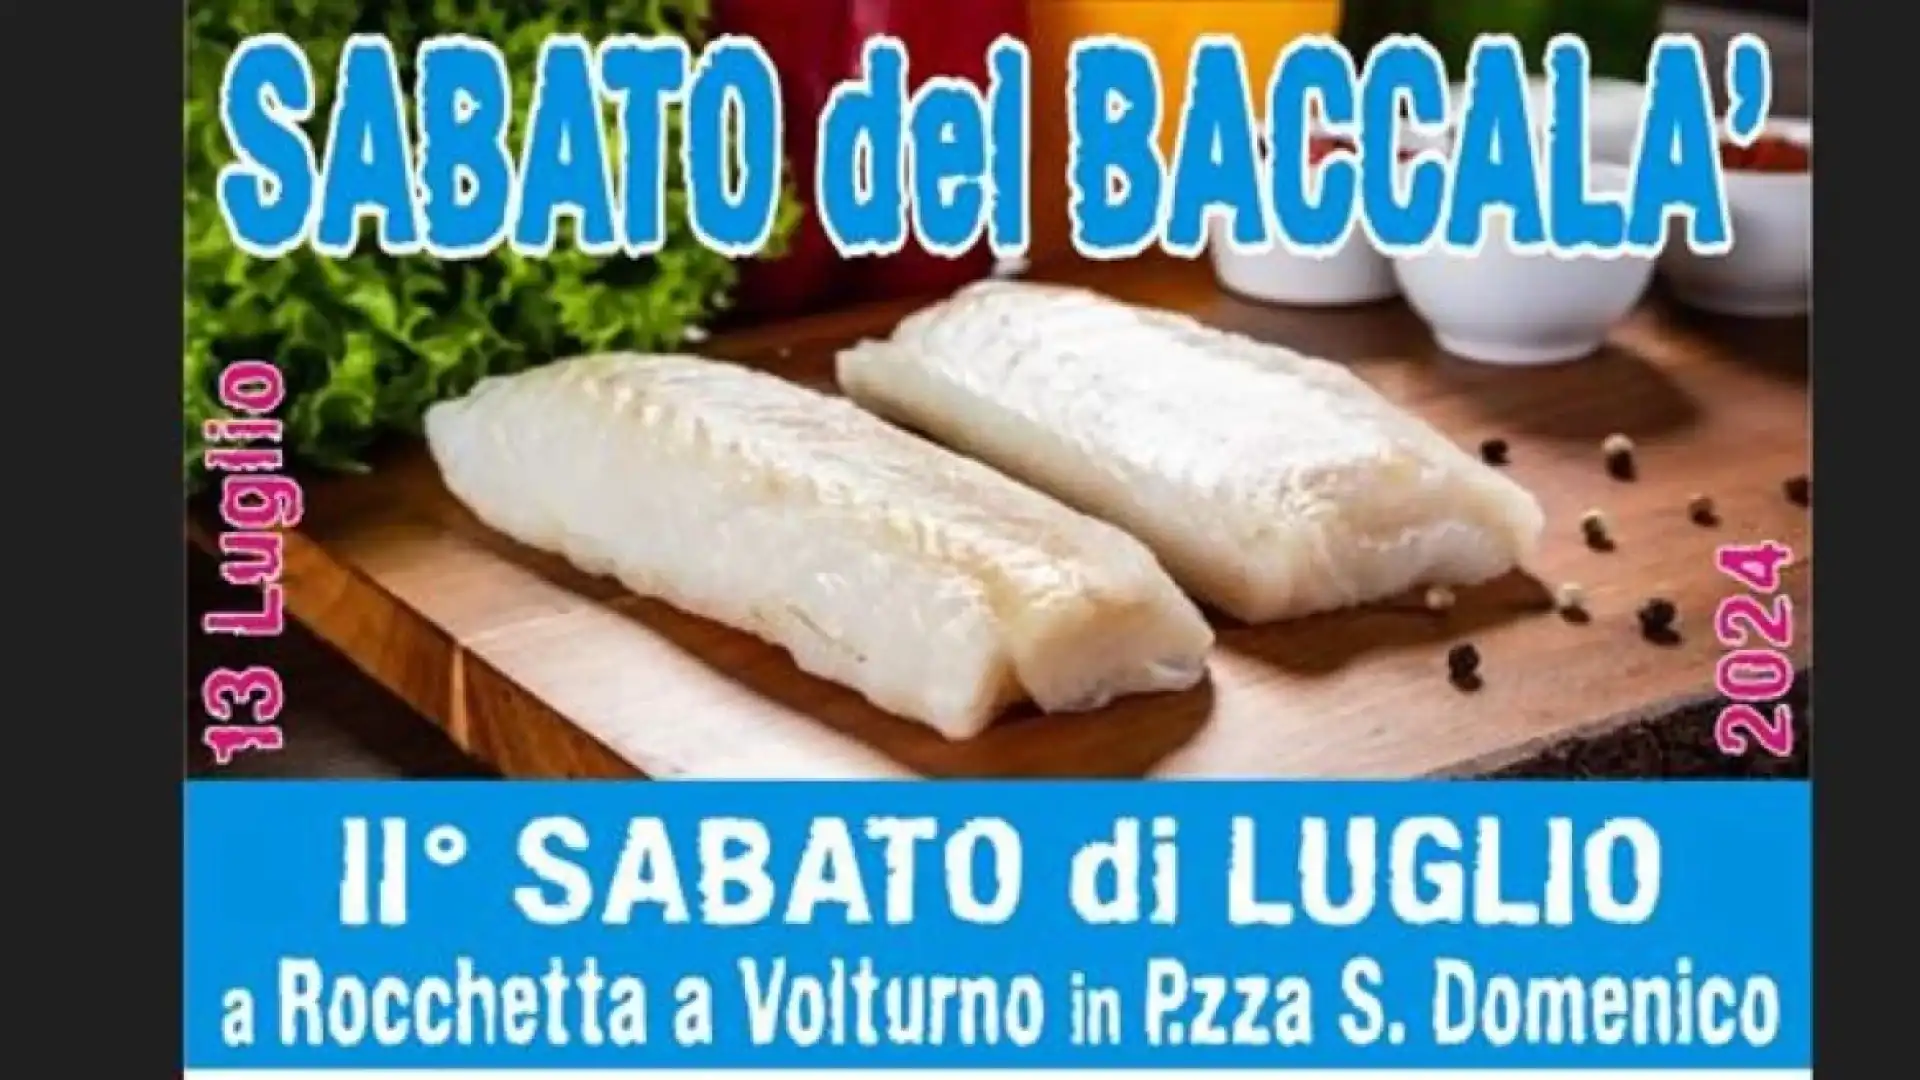 Rocchetta a Volturno: il 13 luglio il “Sabato del Baccala’ “. Appuntamento con il gusto e la tradizione in Piazza San Domenico. Prenota i tuoi piatti.